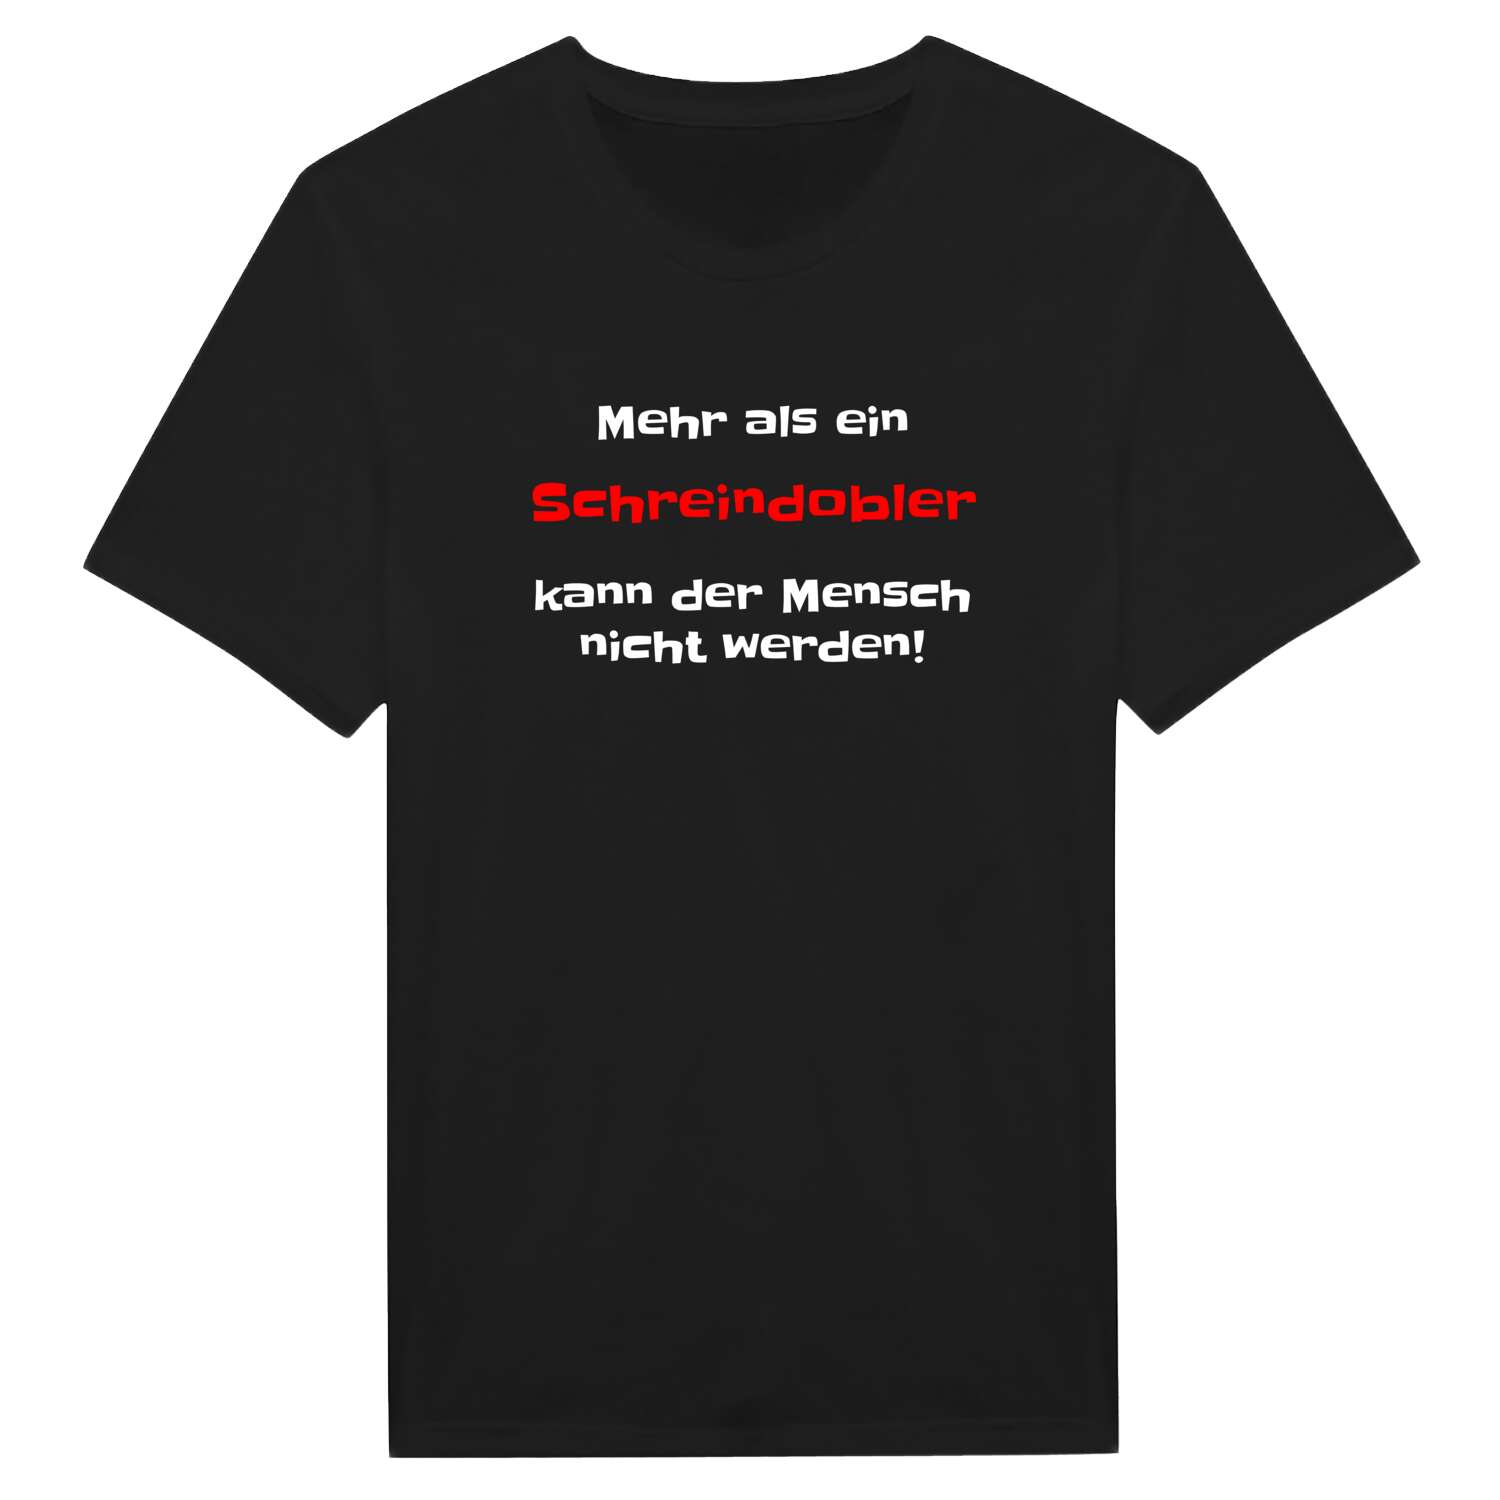 Schreindobl T-Shirt »Mehr als ein«